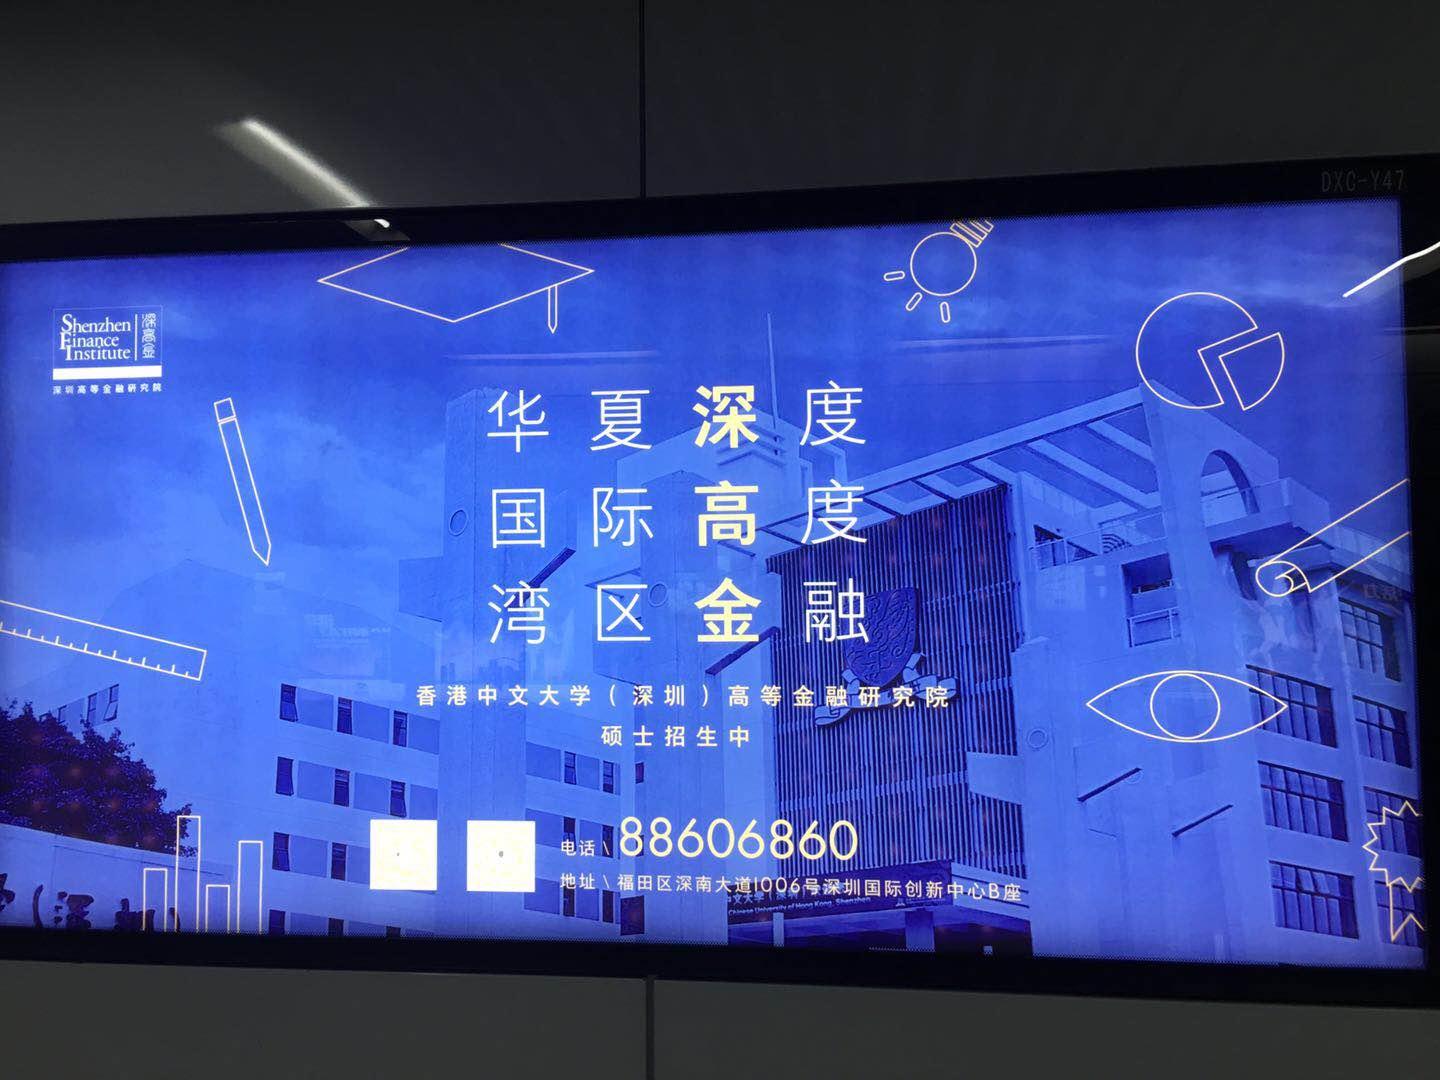 如何评价华南理工大学在广州地铁投放的广告?